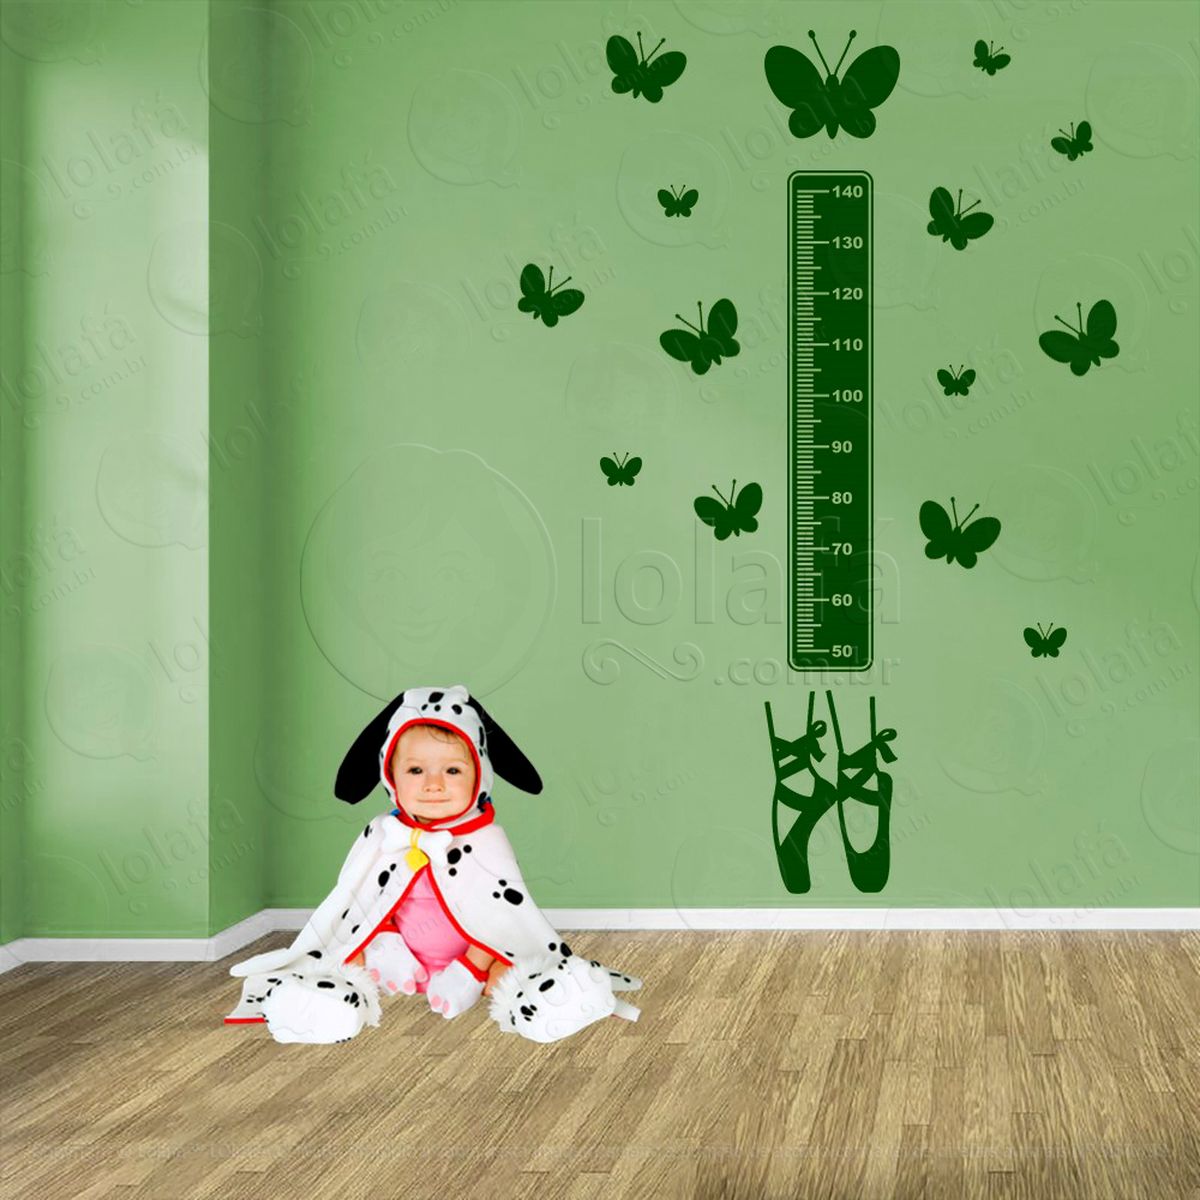 balé e borboletas adesivo régua de crescimento infantil, medidor de altura para quarto, porta e parede - mod:525